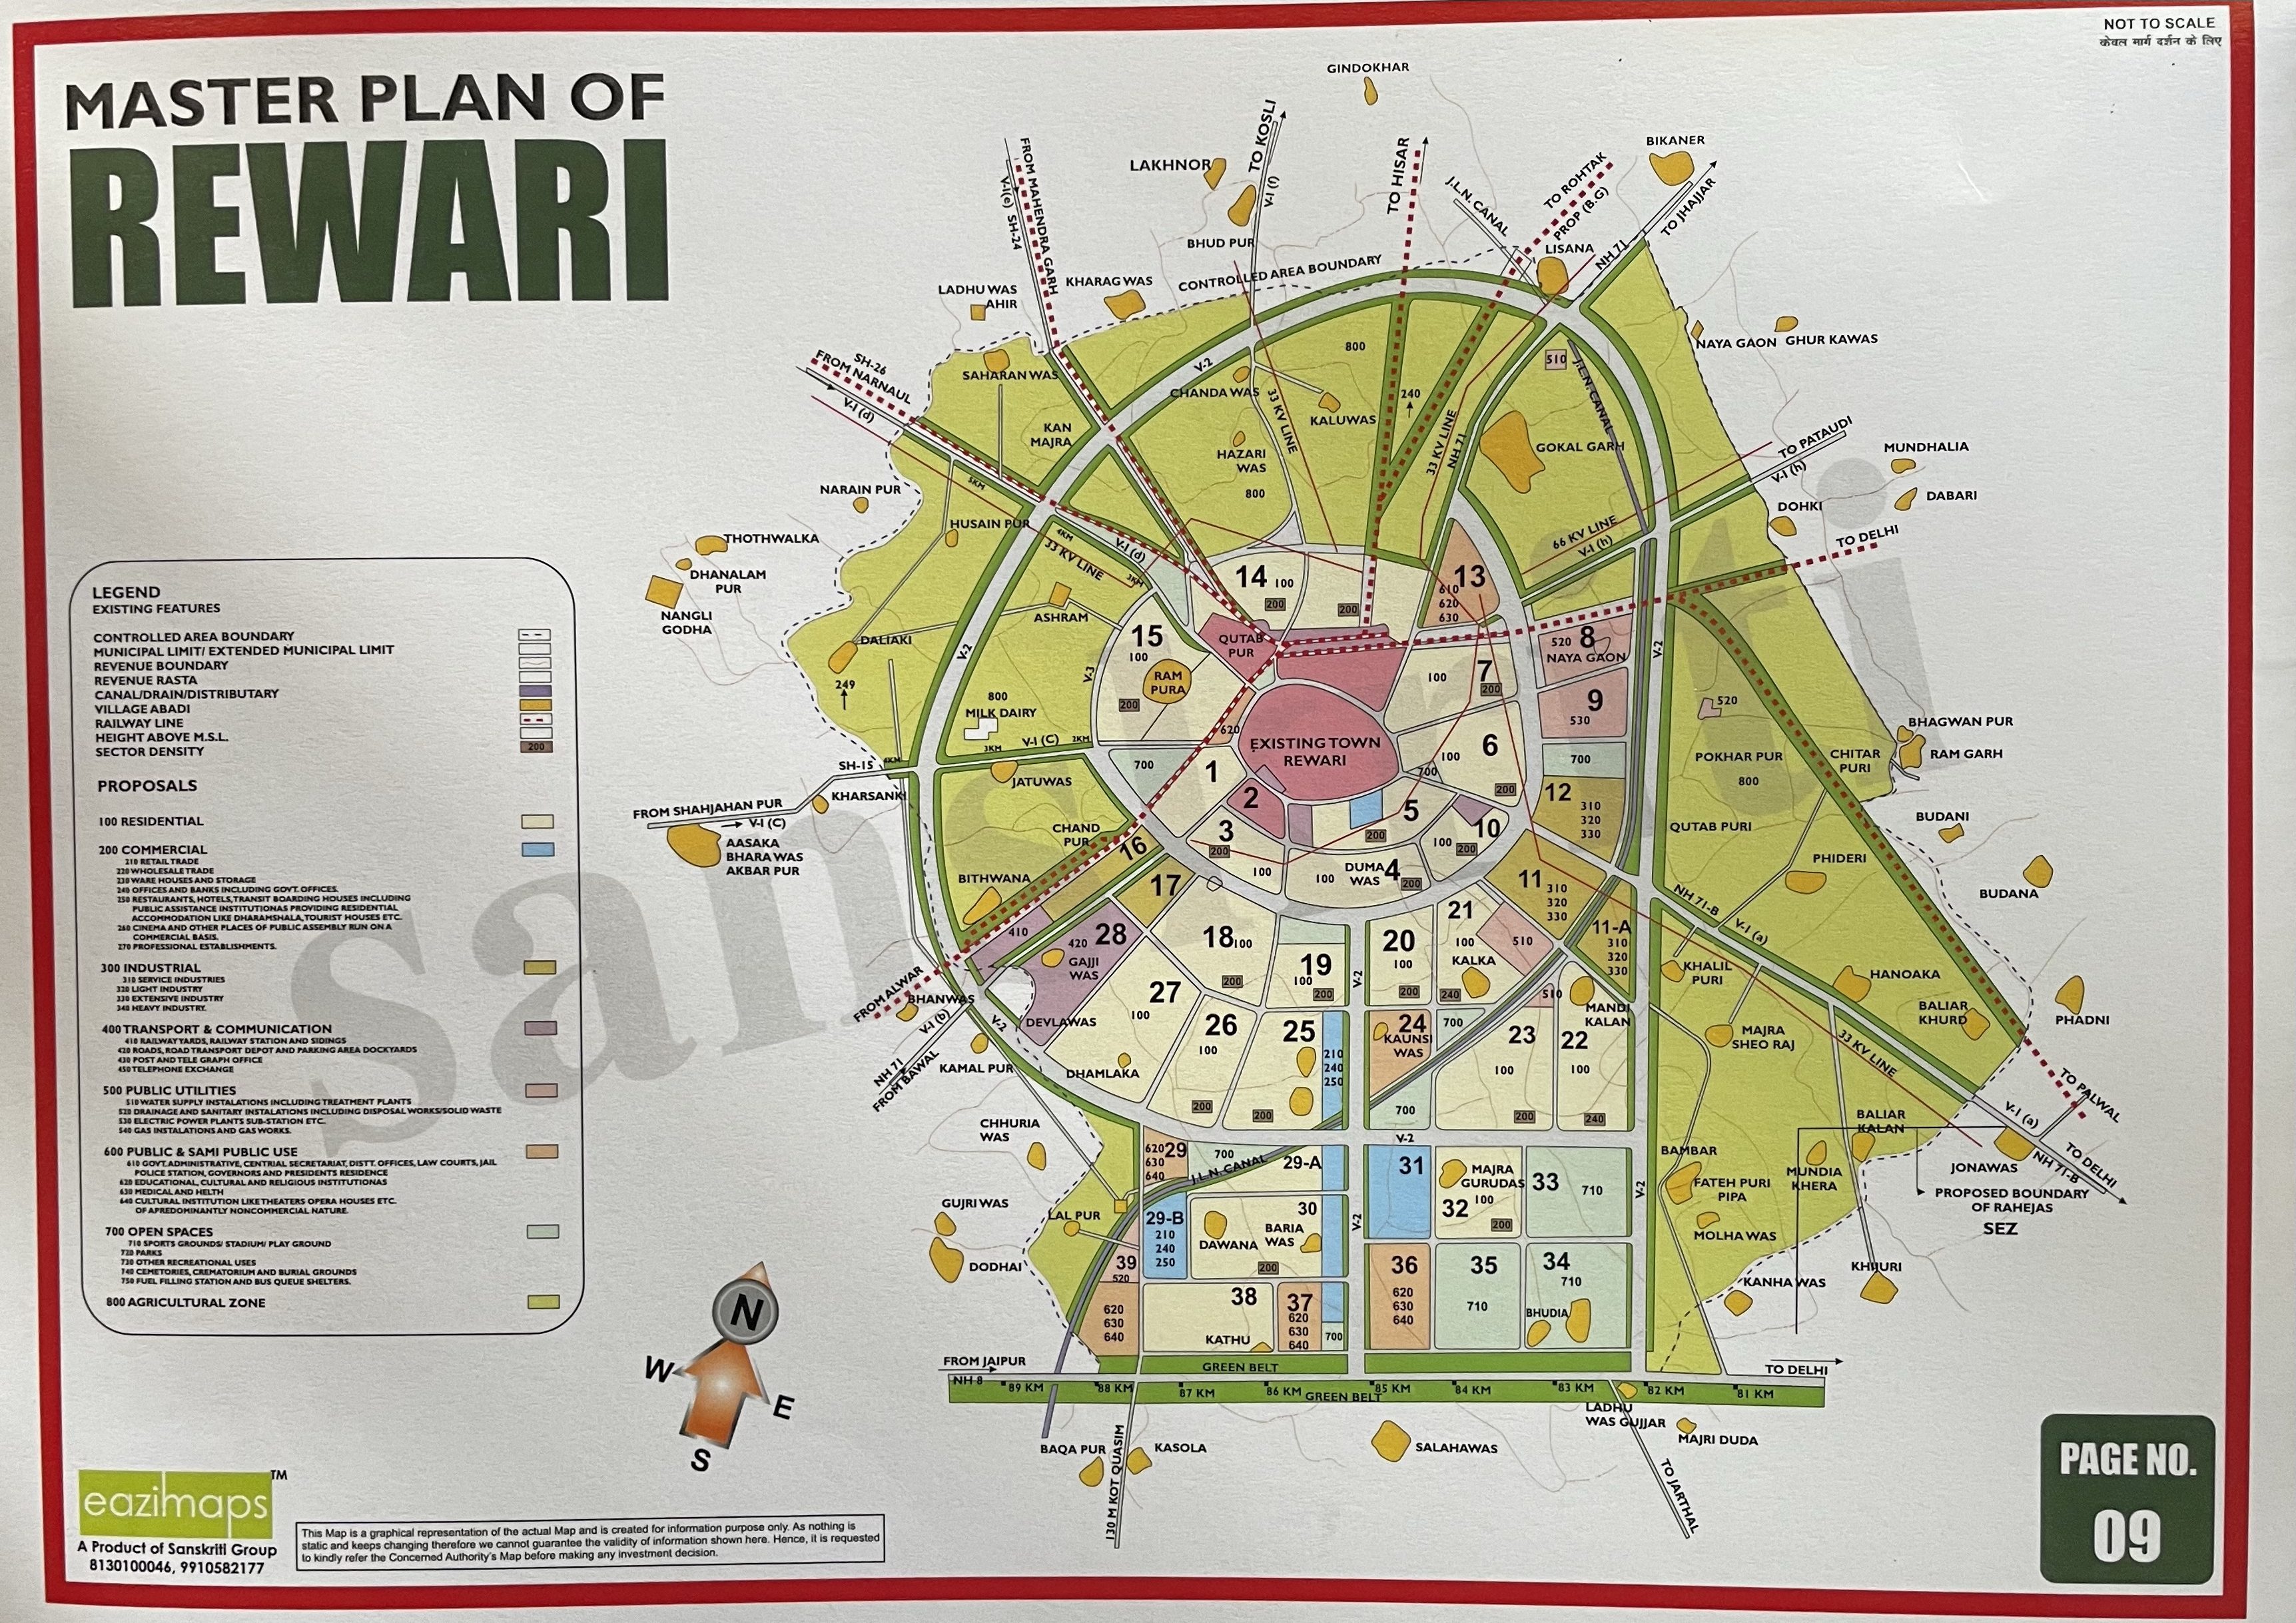 rewari master plan 2031